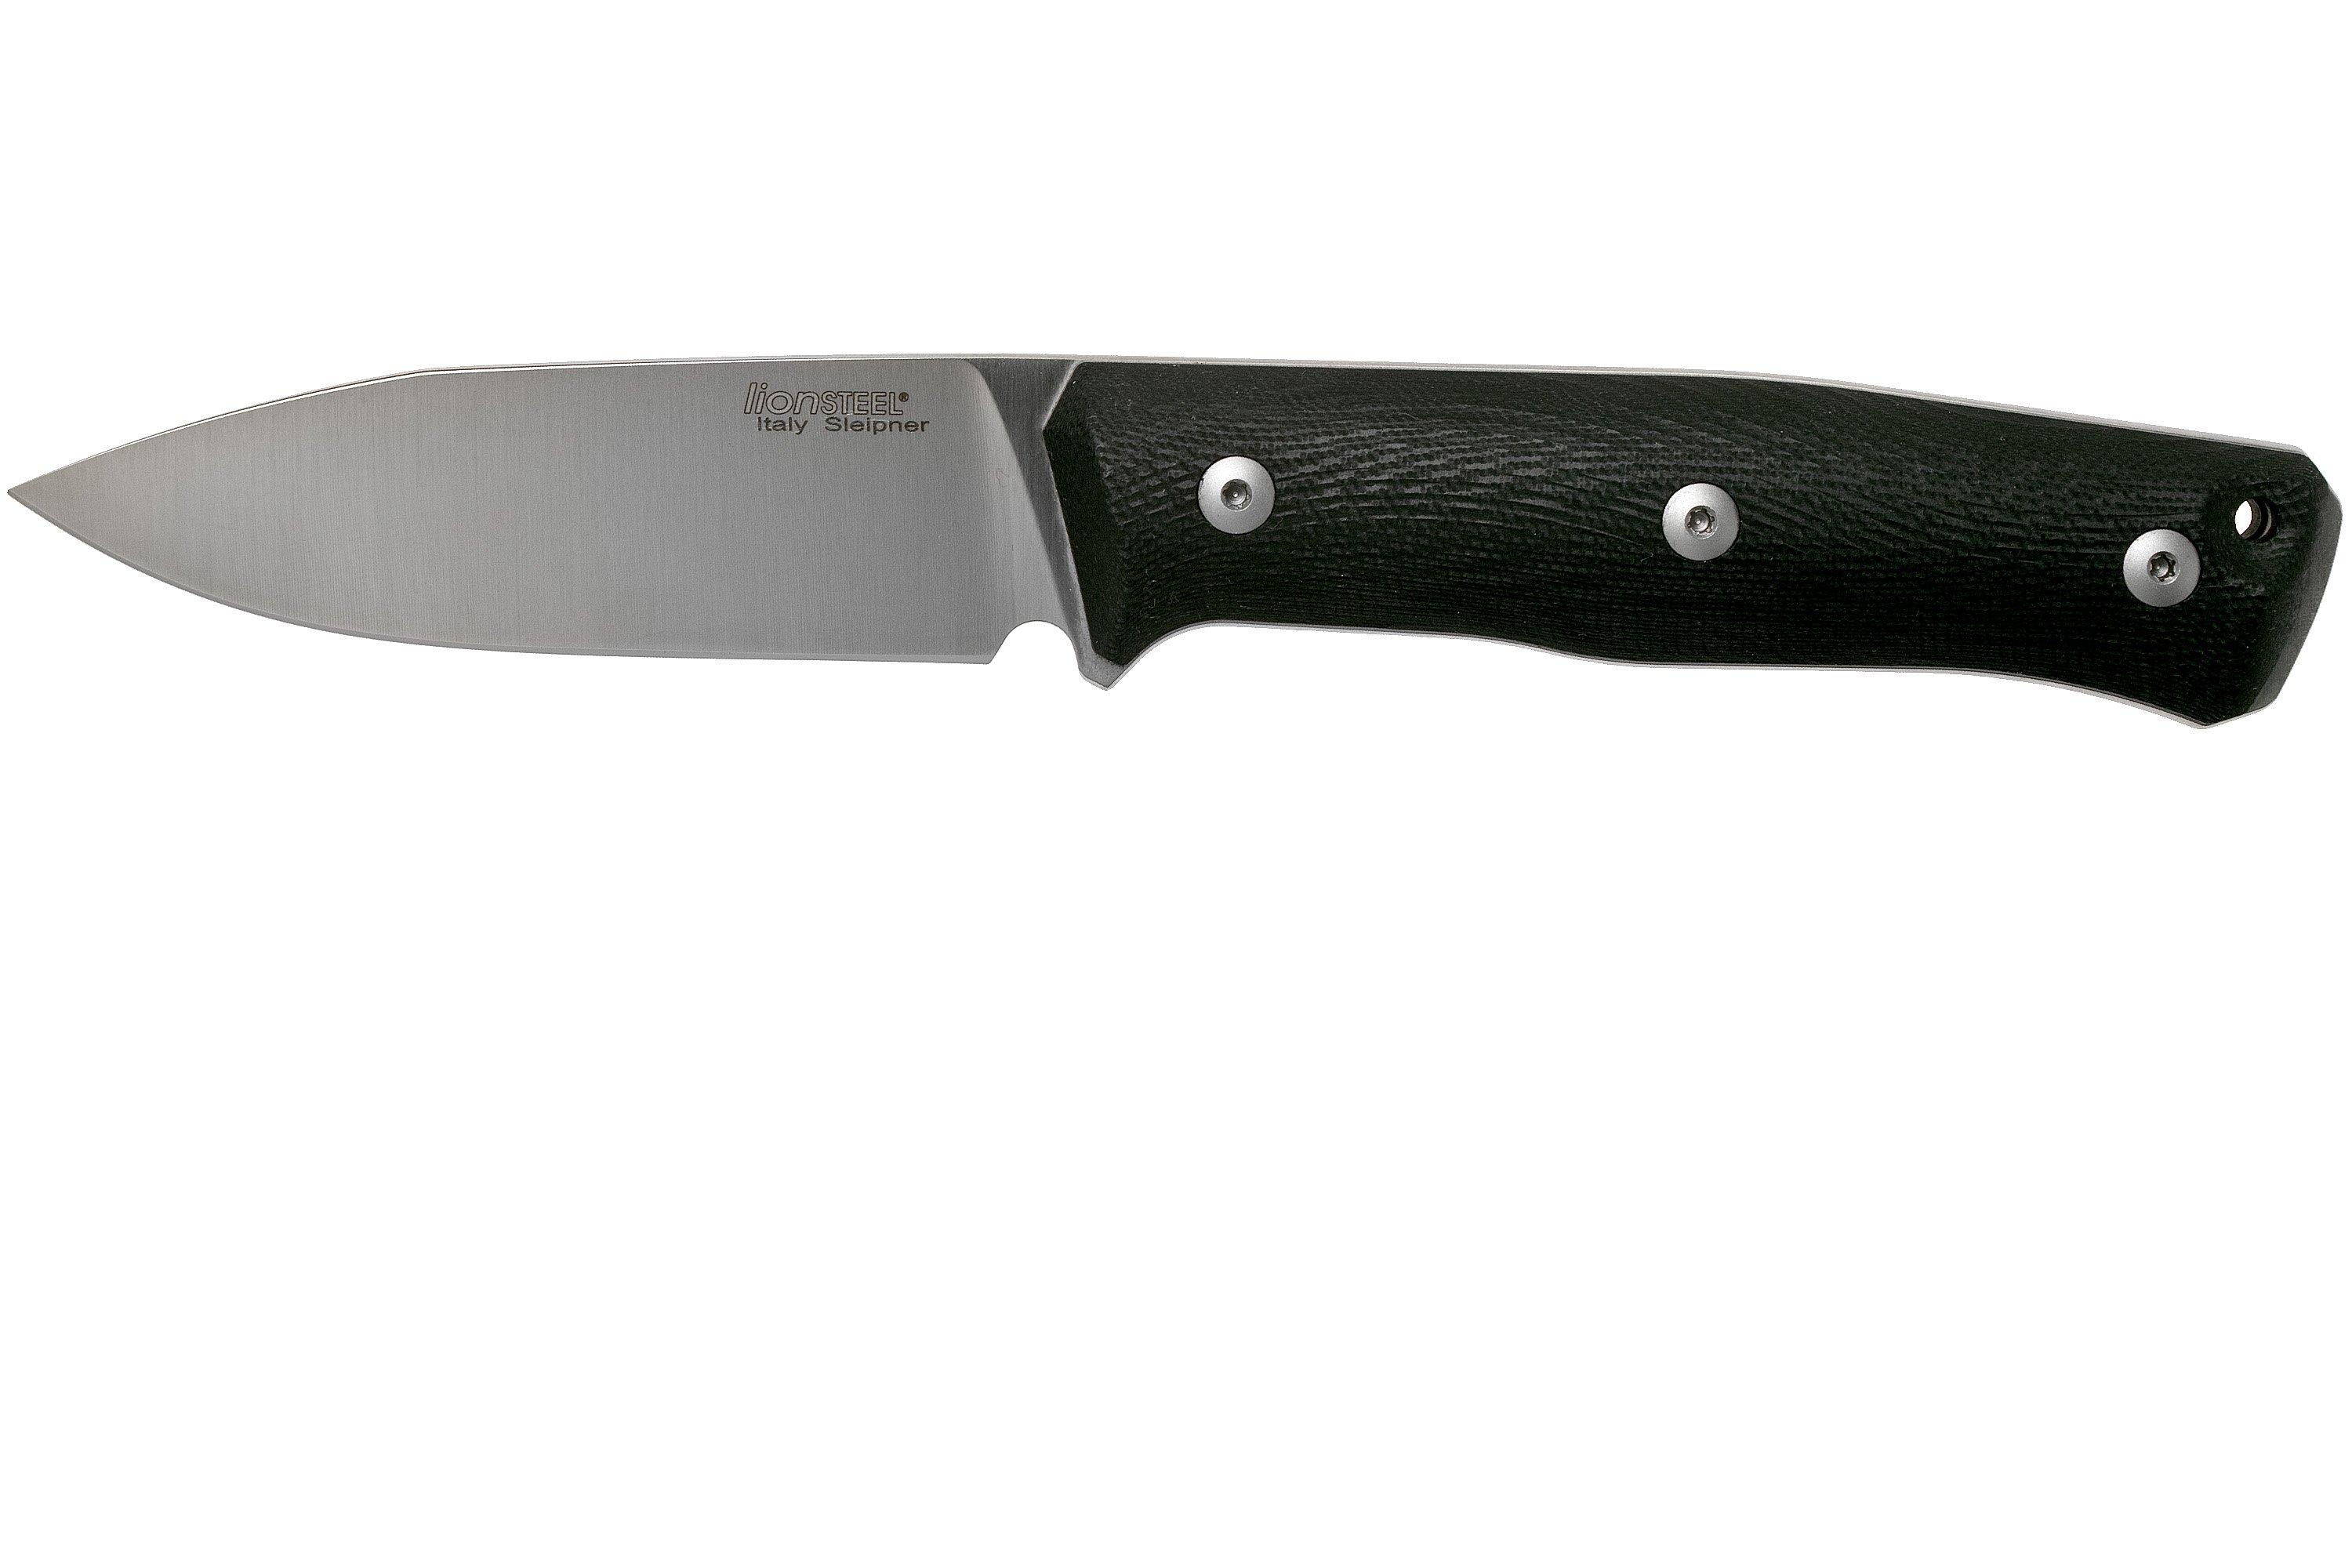 LionSteel B35 ST Santos cuchillo bushcraft  Compras con ventajas en